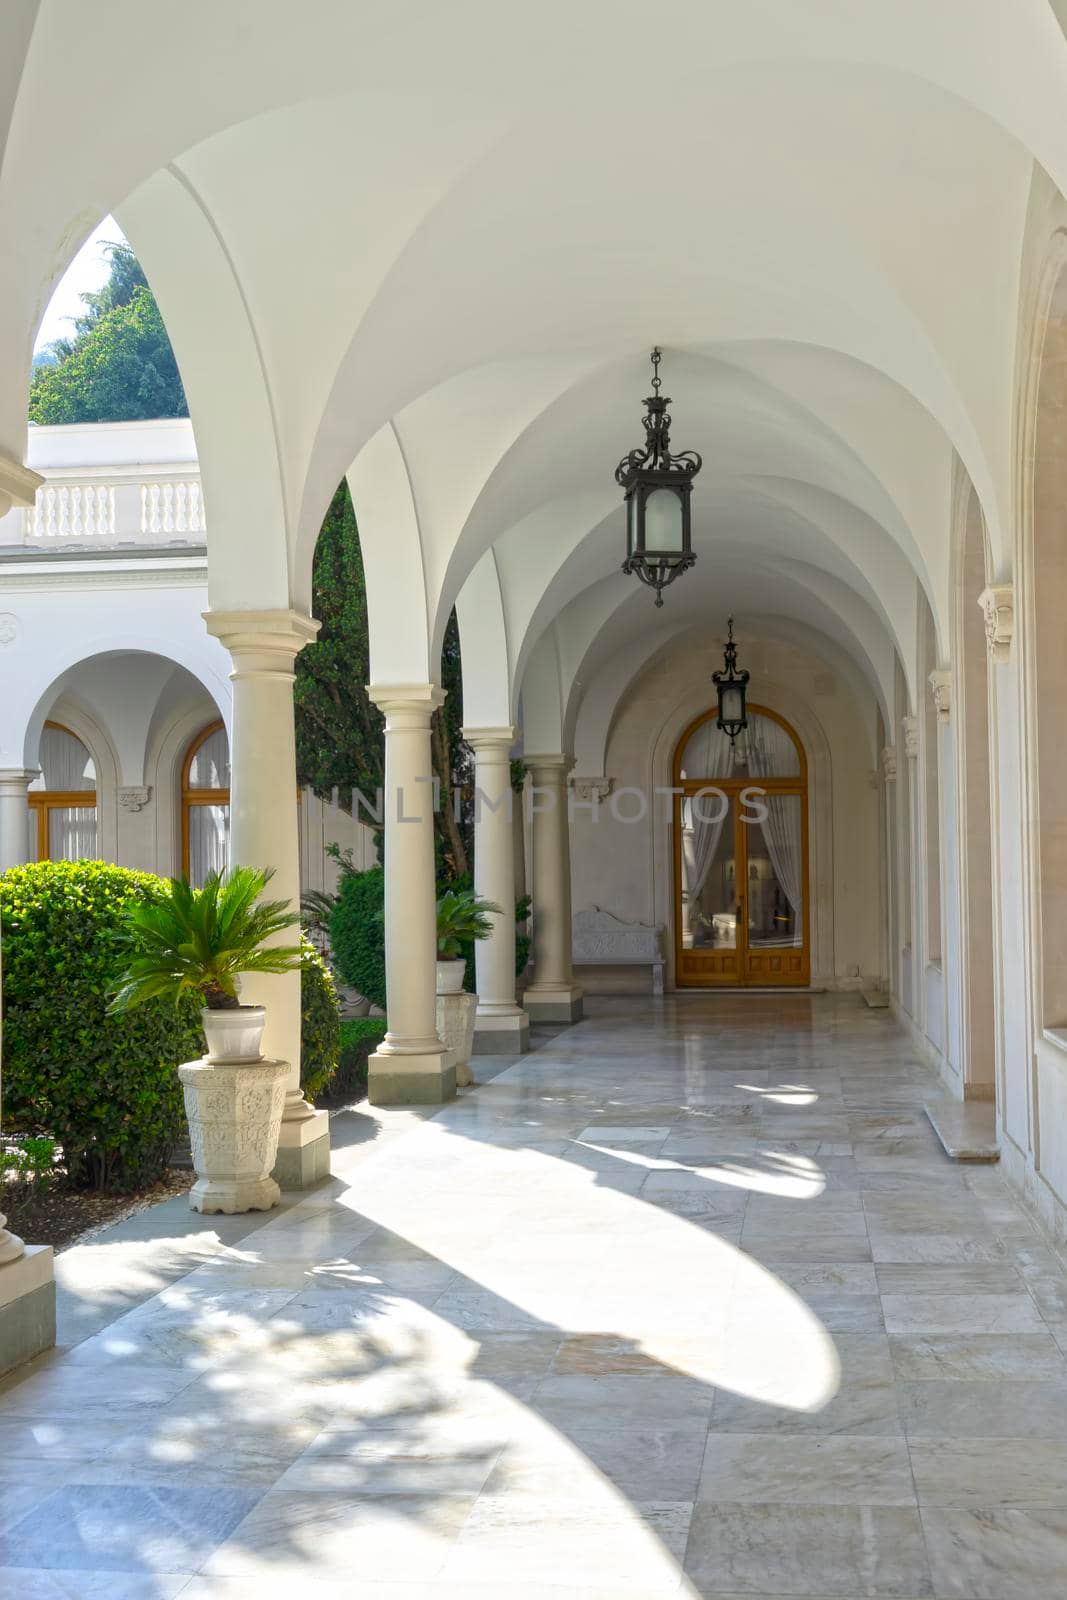 Yalta, Crimea-May 30, 2016: Interior of the Livadia Palace